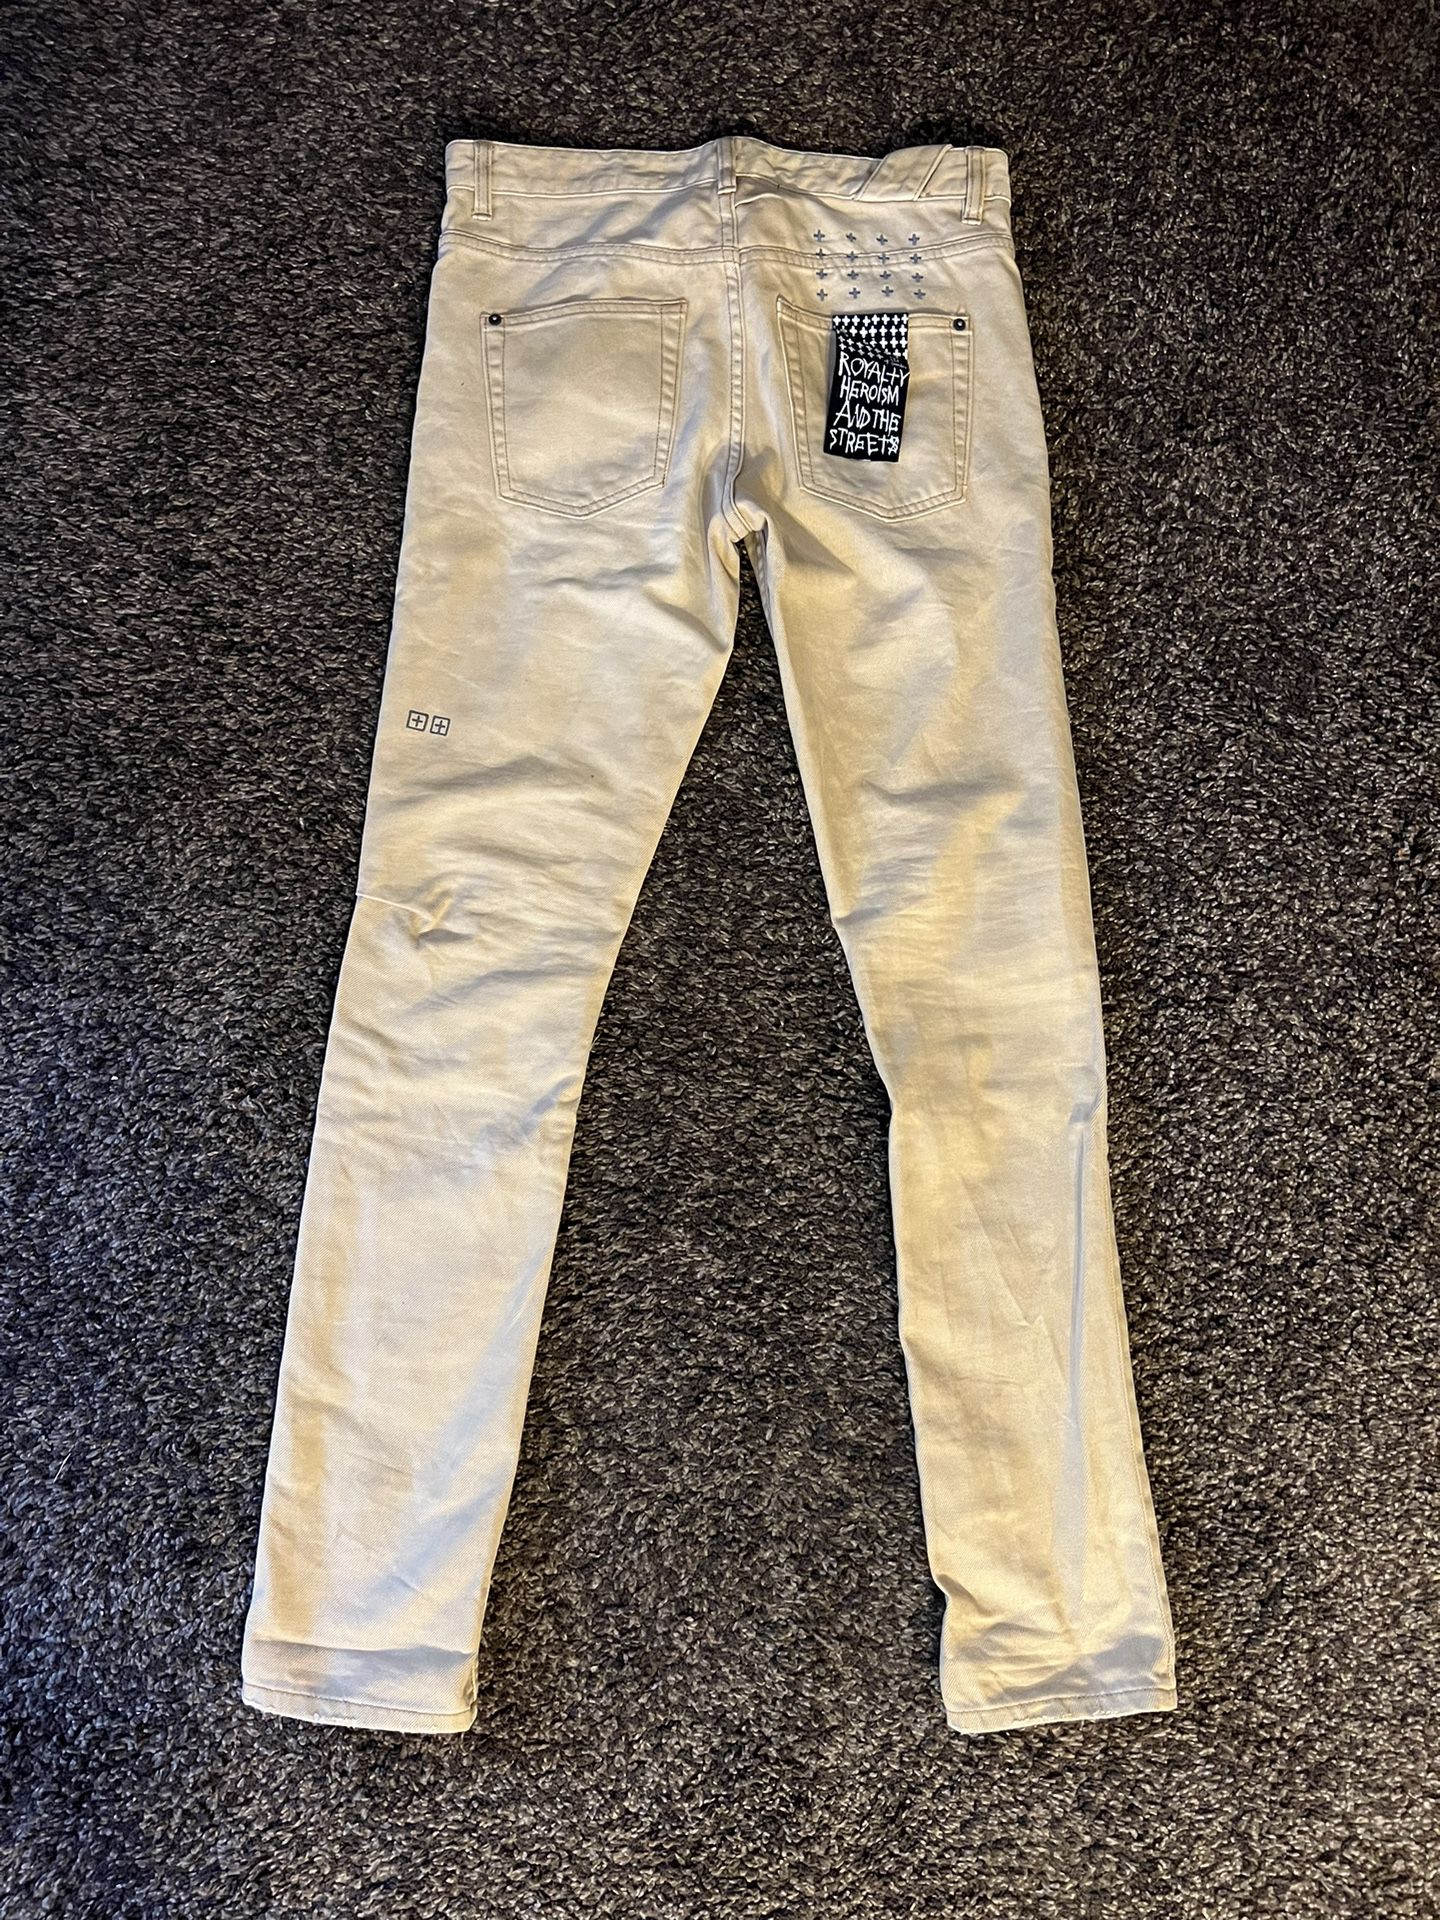 KSUBI Chitch Khaki Jeans Pants (Size 30) Levi’s Supreme 